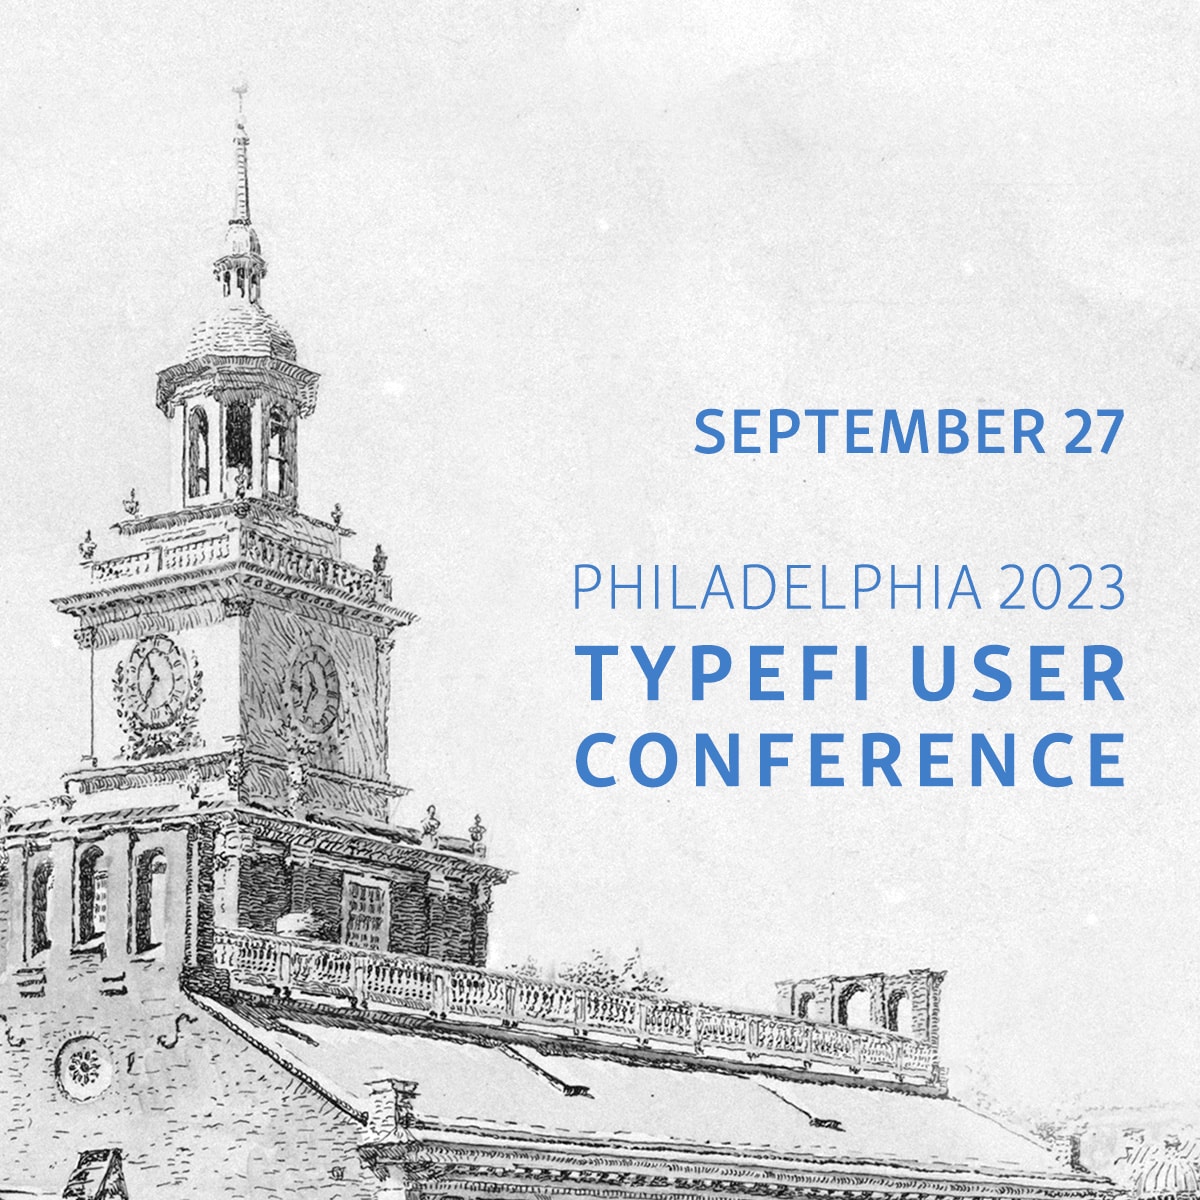 September 27, Philadelphia 2023, Typefi User Conference